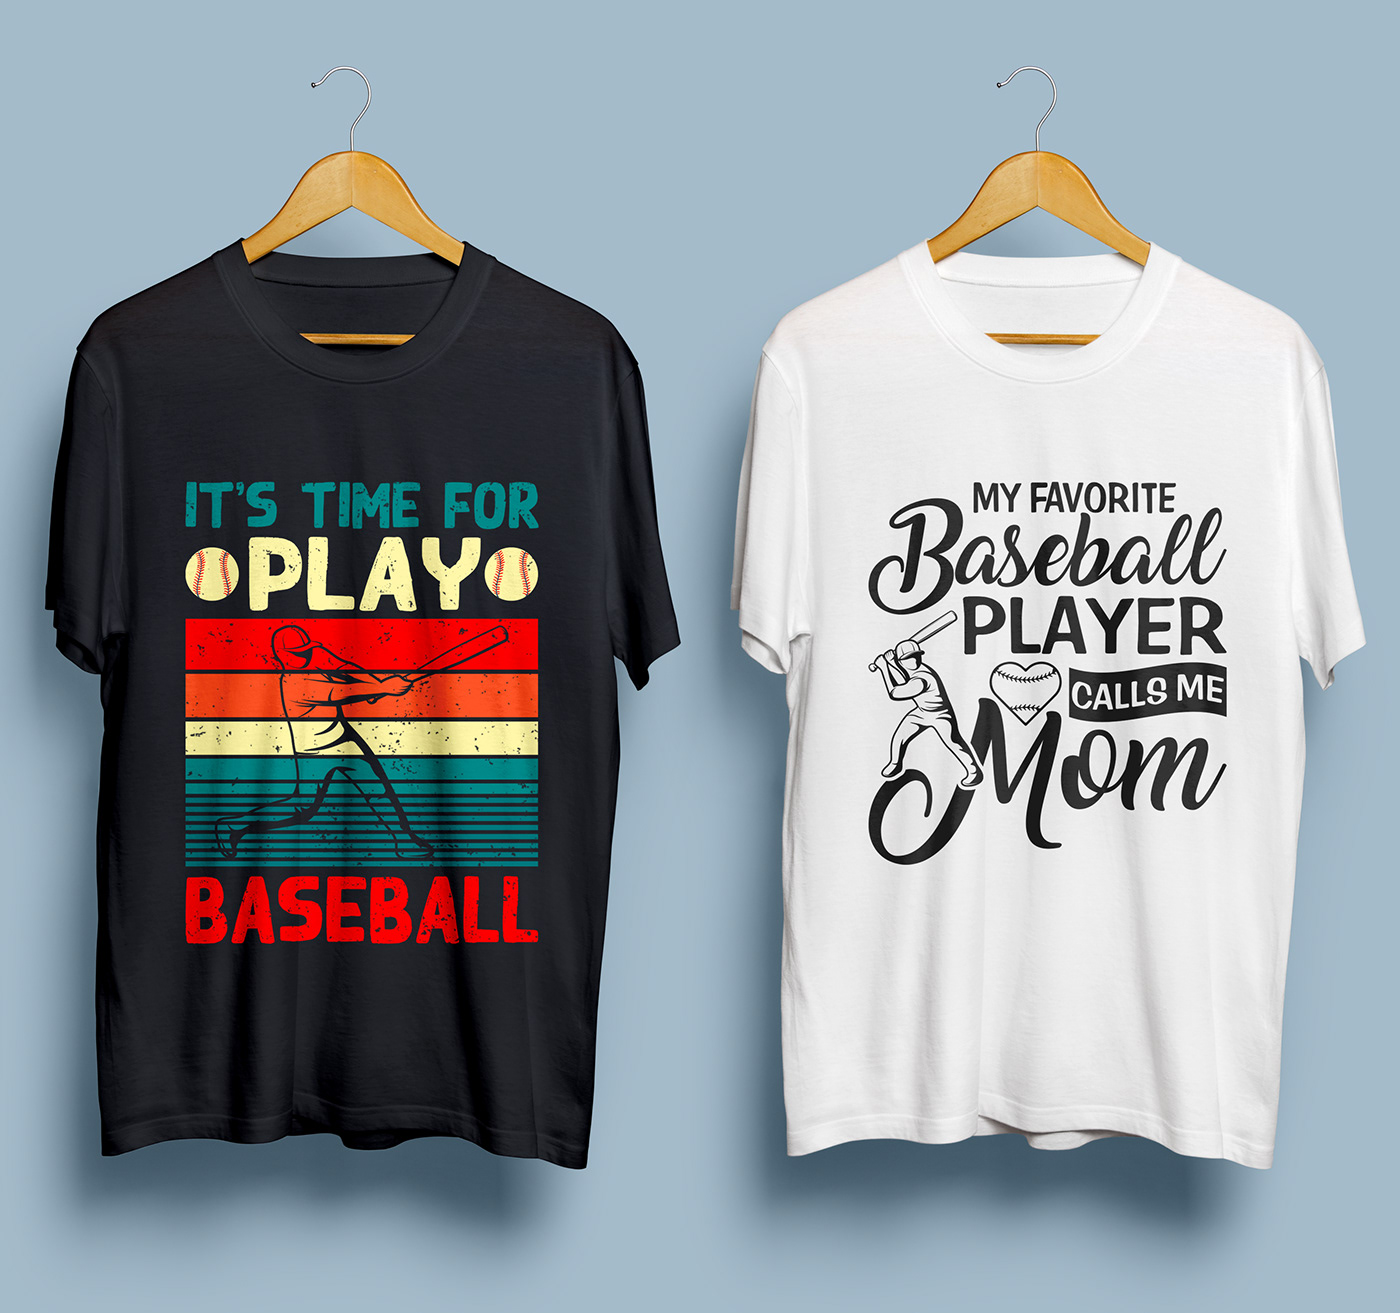 Baseball T-Shirt design baseball t-shirt T-Shirt Design baseball gaming t-shirt design UNIQUE T-SHIRT DESIGN boys t-shirt Baseball Lover T-Shirt Best T-shirt Design Player t-shirt